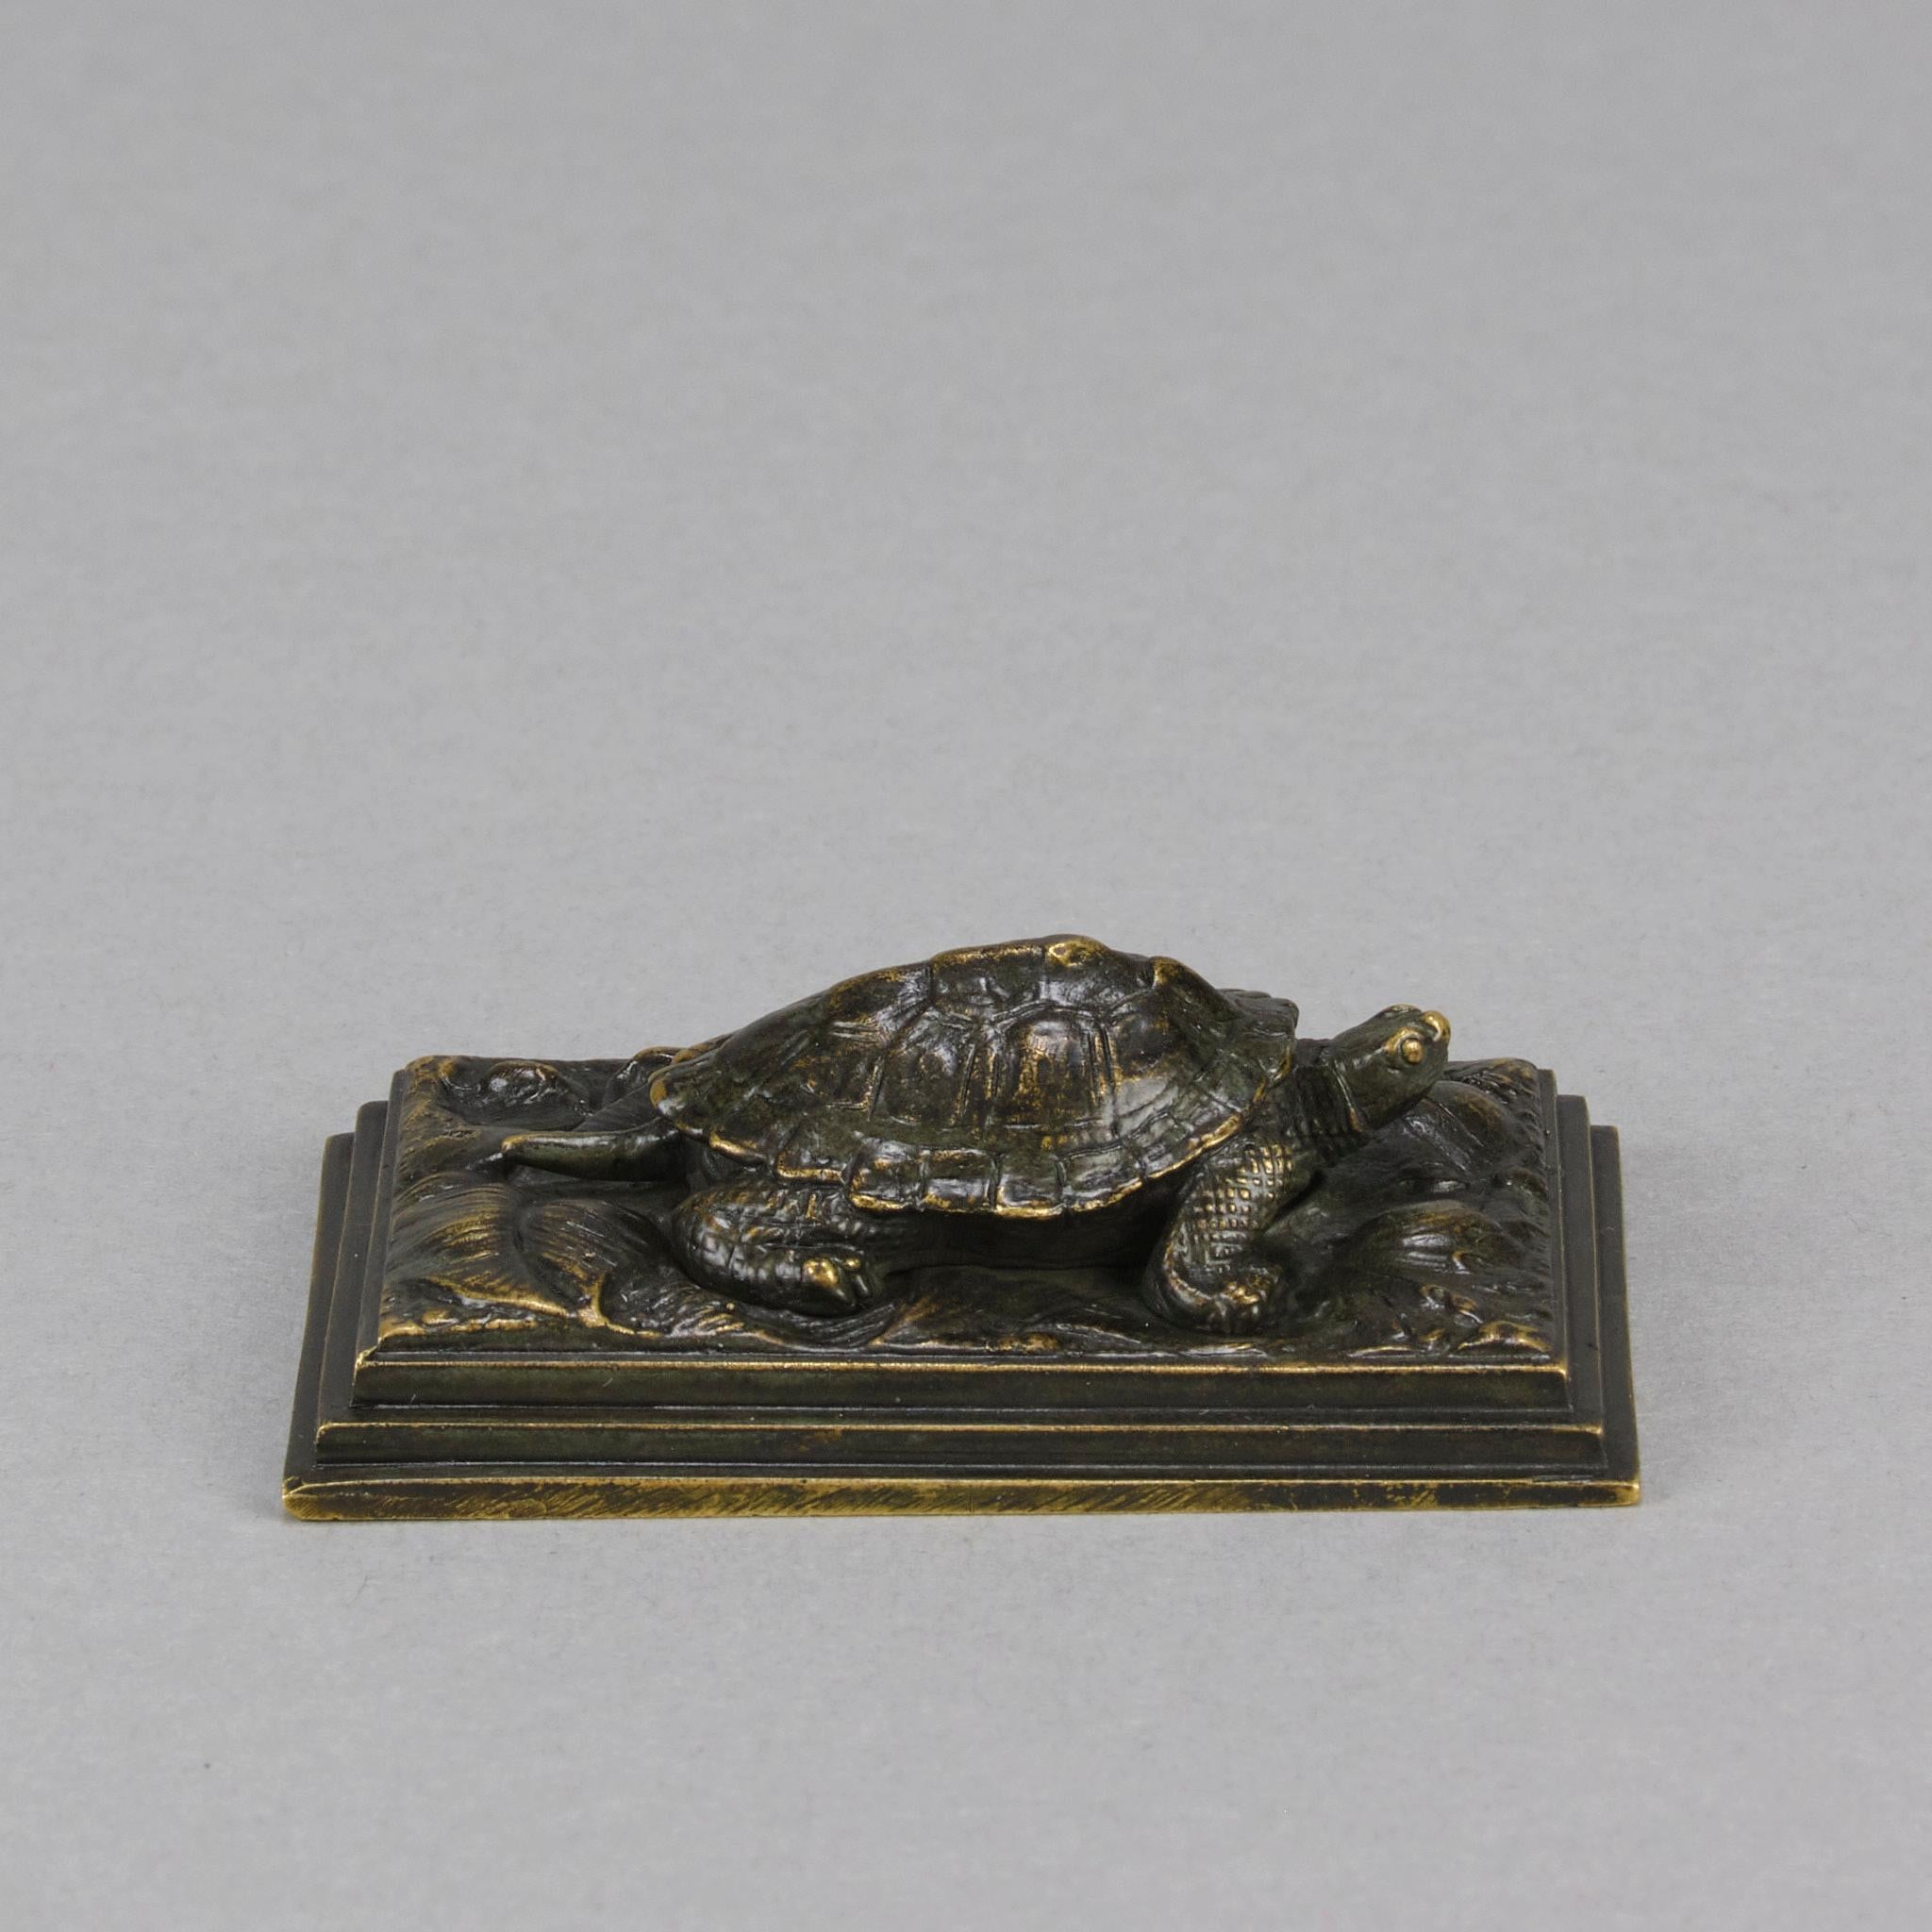 Une charmante figure de tortue en bronze français du milieu du 19e siècle, avec une excellente surface ciselée à la main et une très belle patine brune riche, frottée à une teinte dorée par endroits, reposant sur une base à gradins et signée